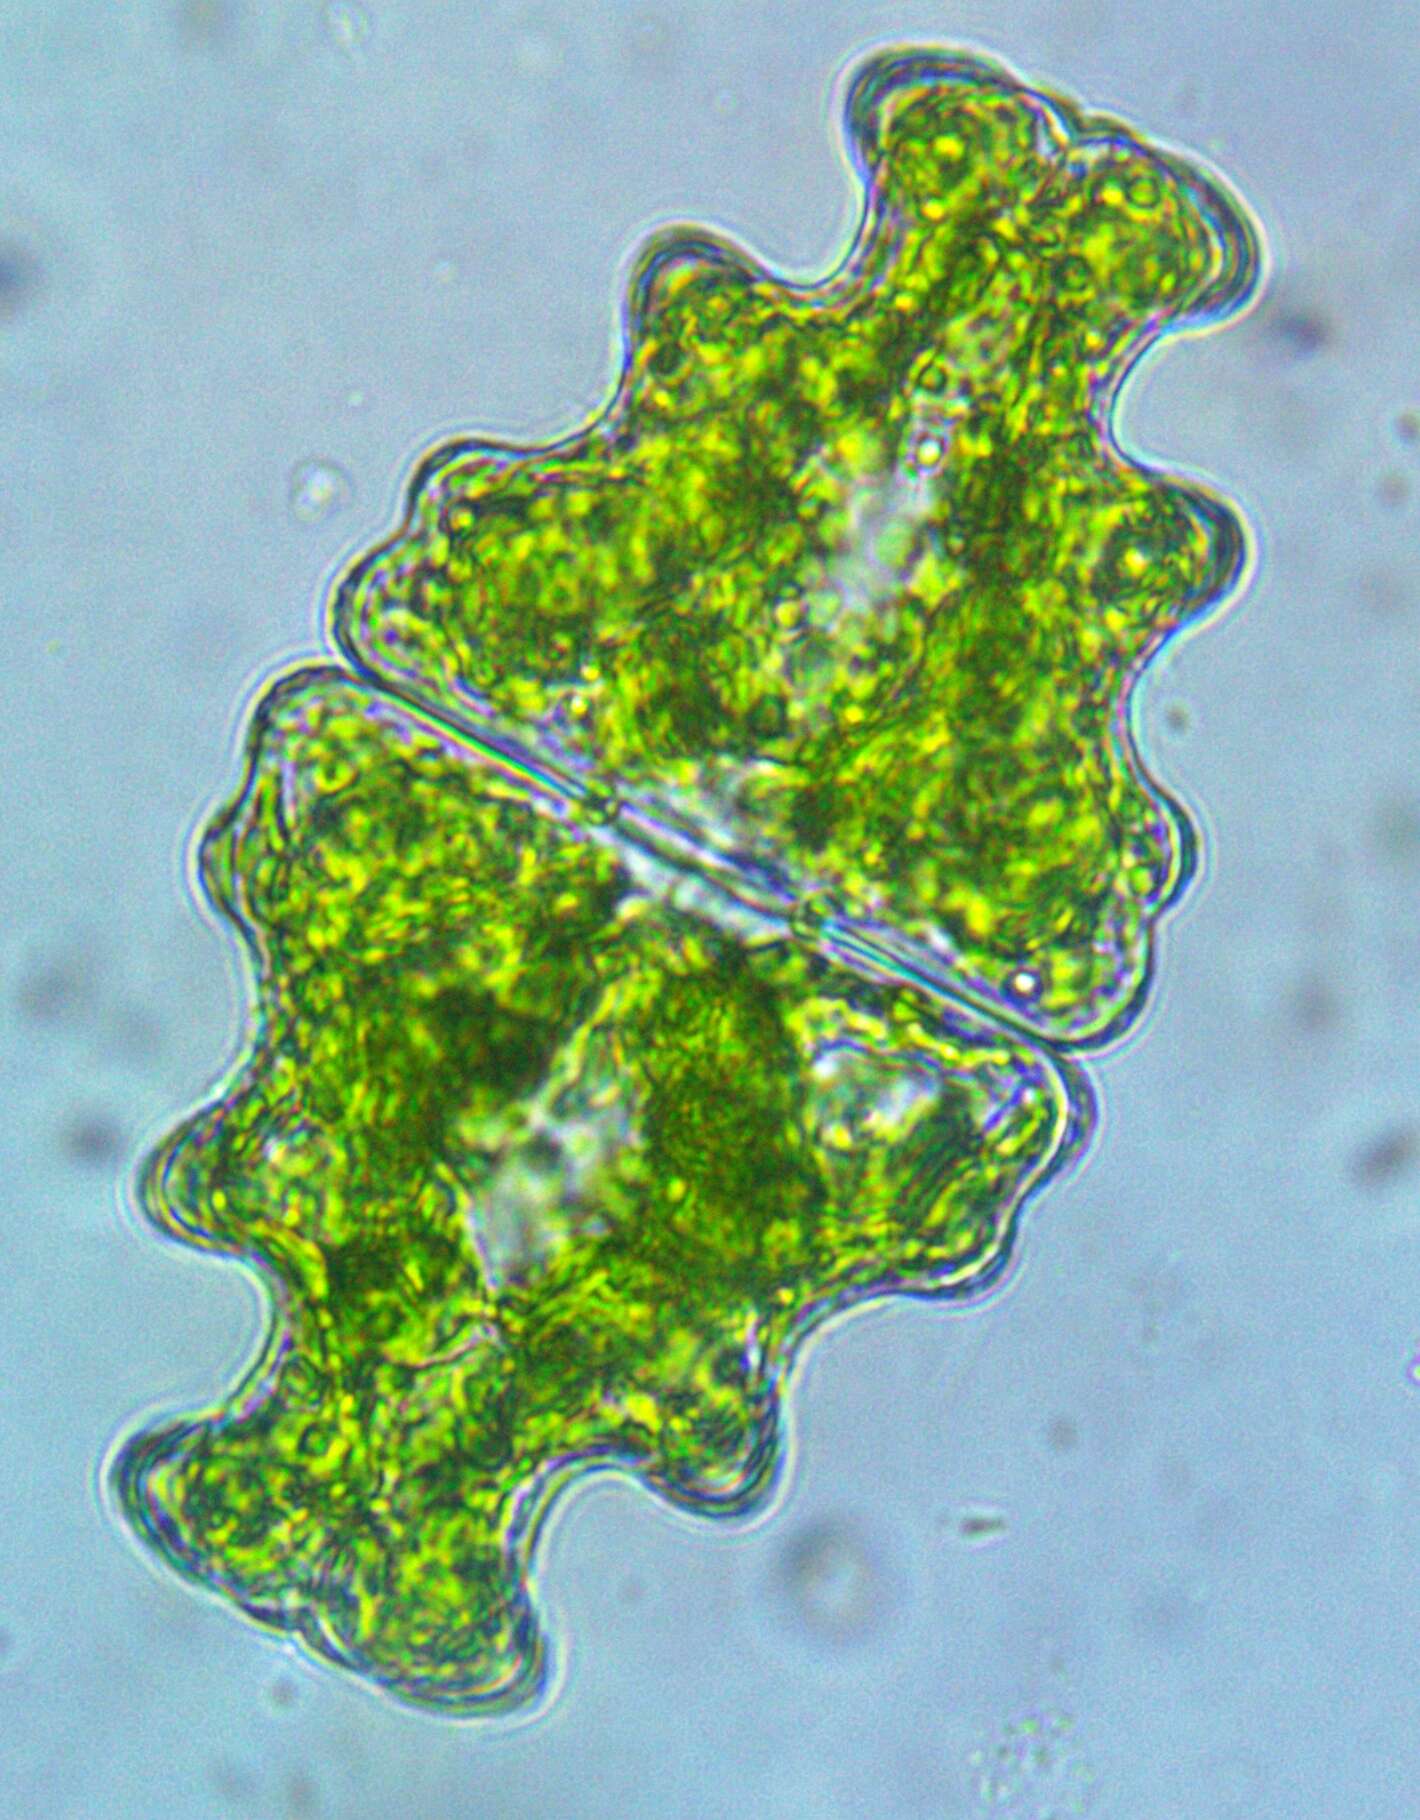 Image of Euastrum humerosum